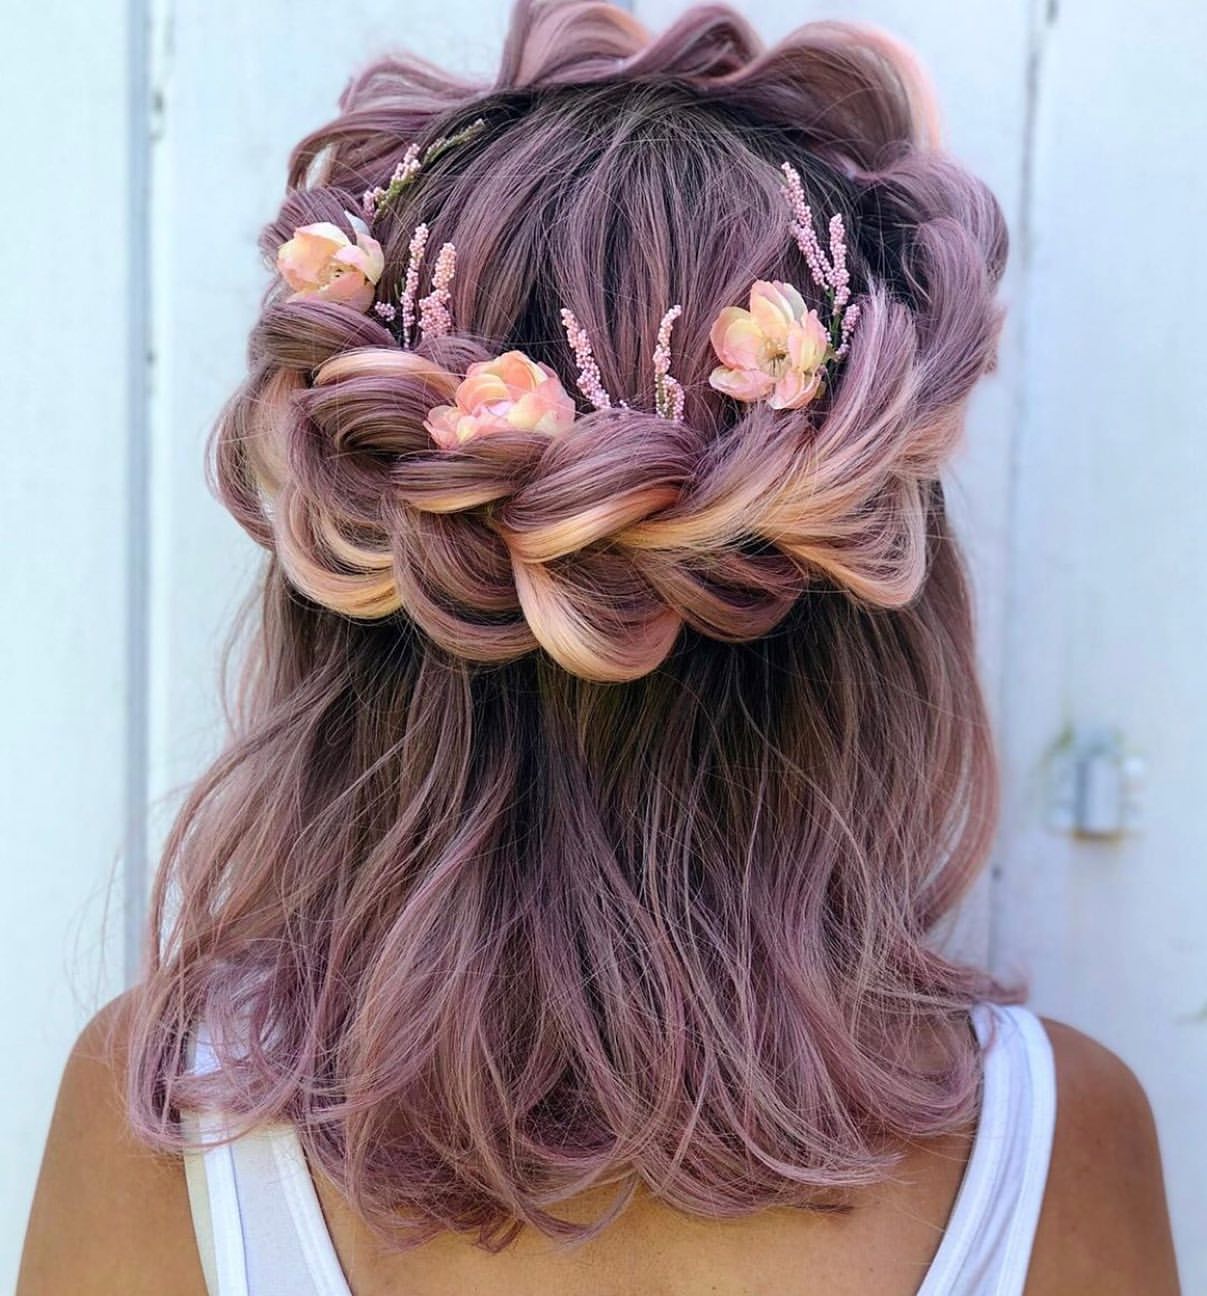 floral braided crown